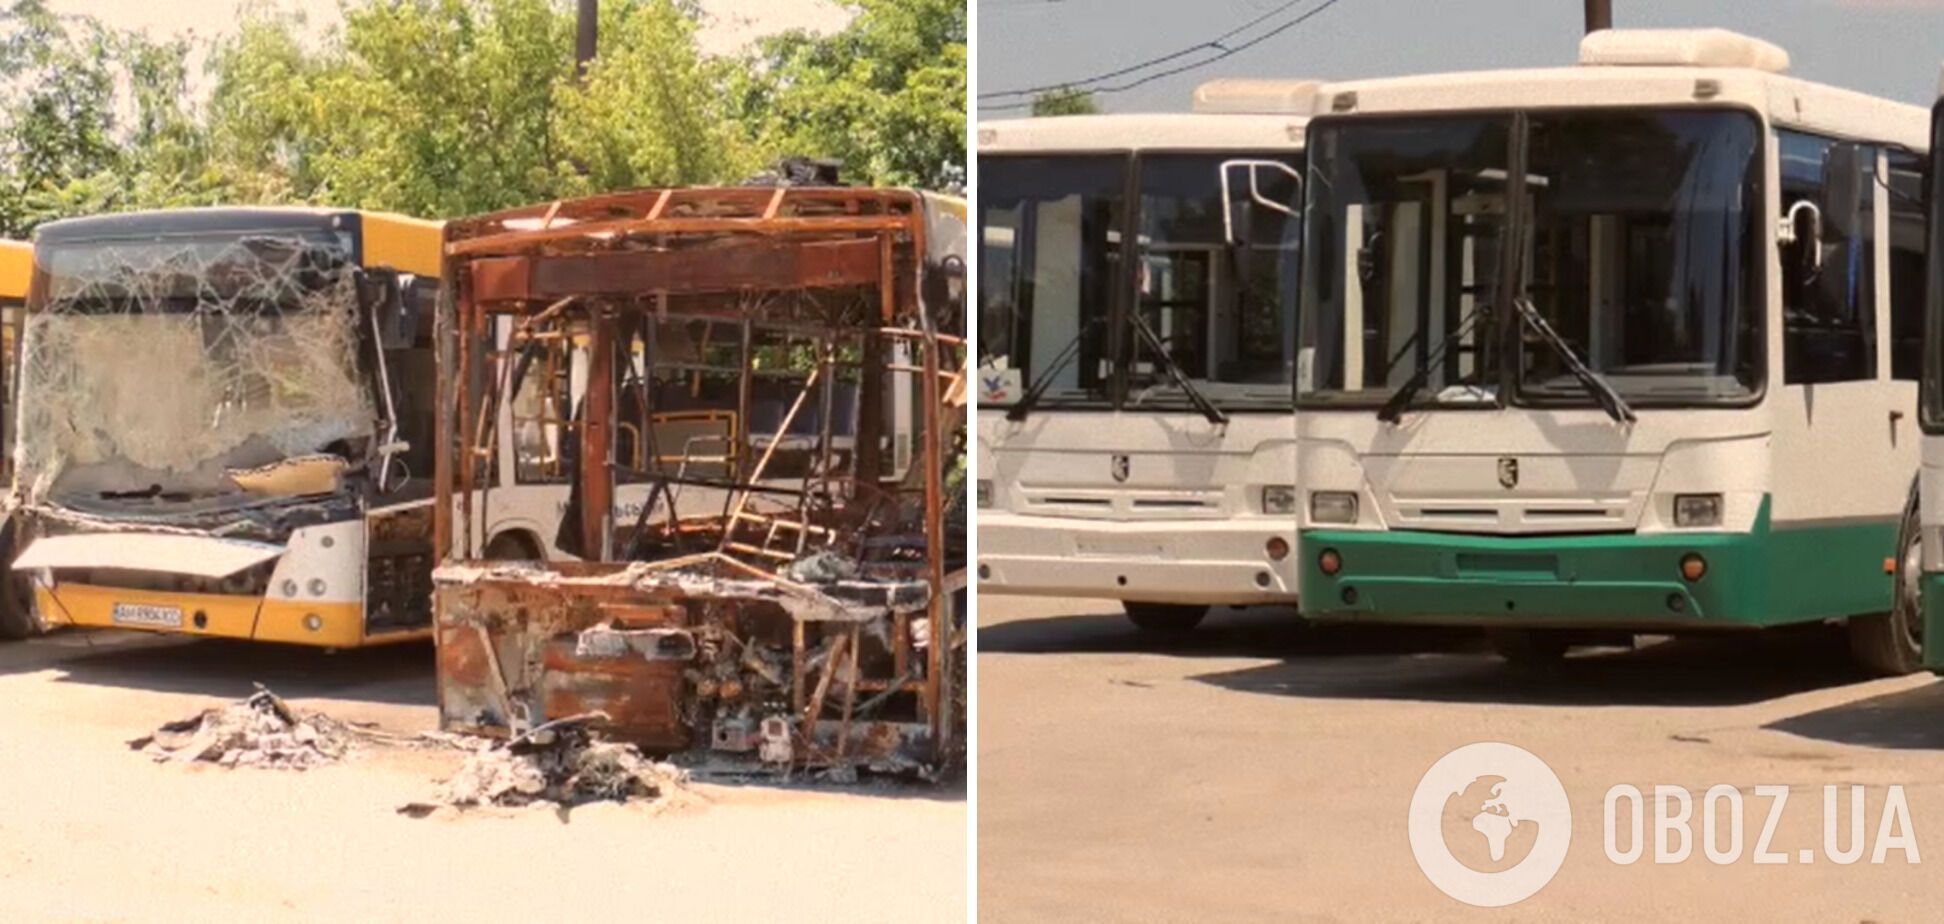 Российские оккупанты подарили Мариуполю 10 подержанных автобусов вместо разрушенных ими 130 новых